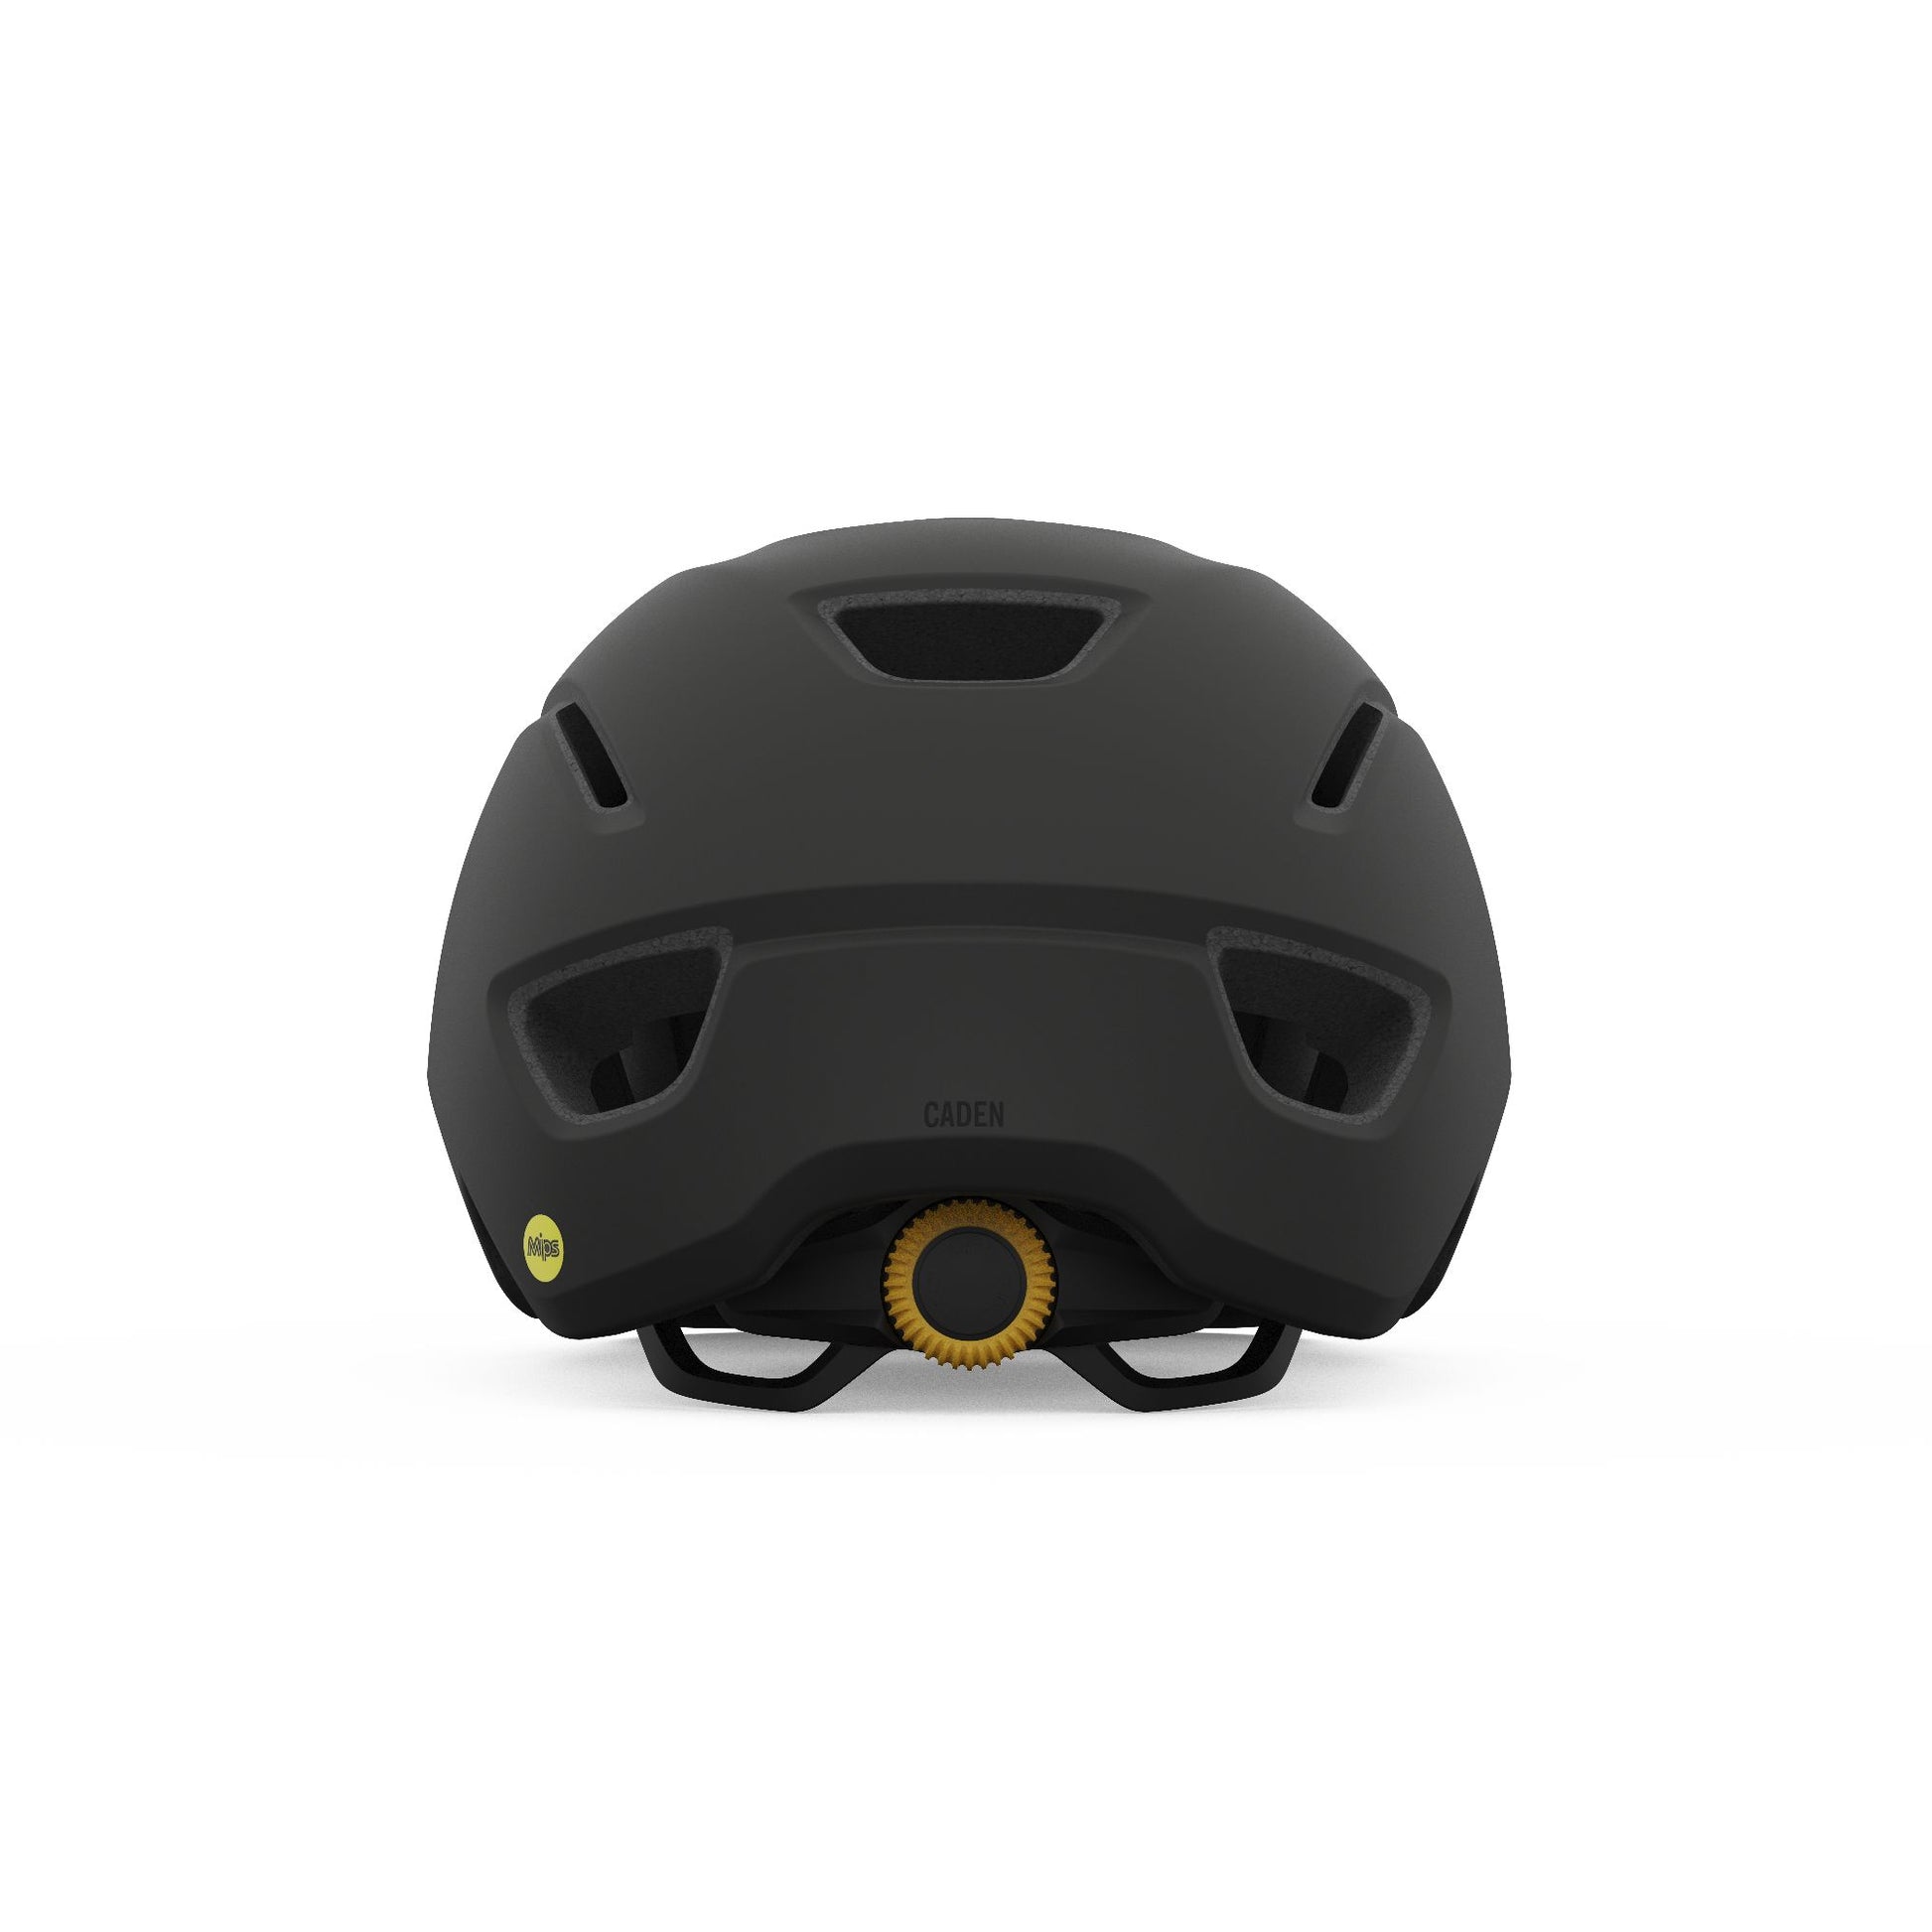 Giro Caden MIPS Helmet Matte Grey L Bike Helmets